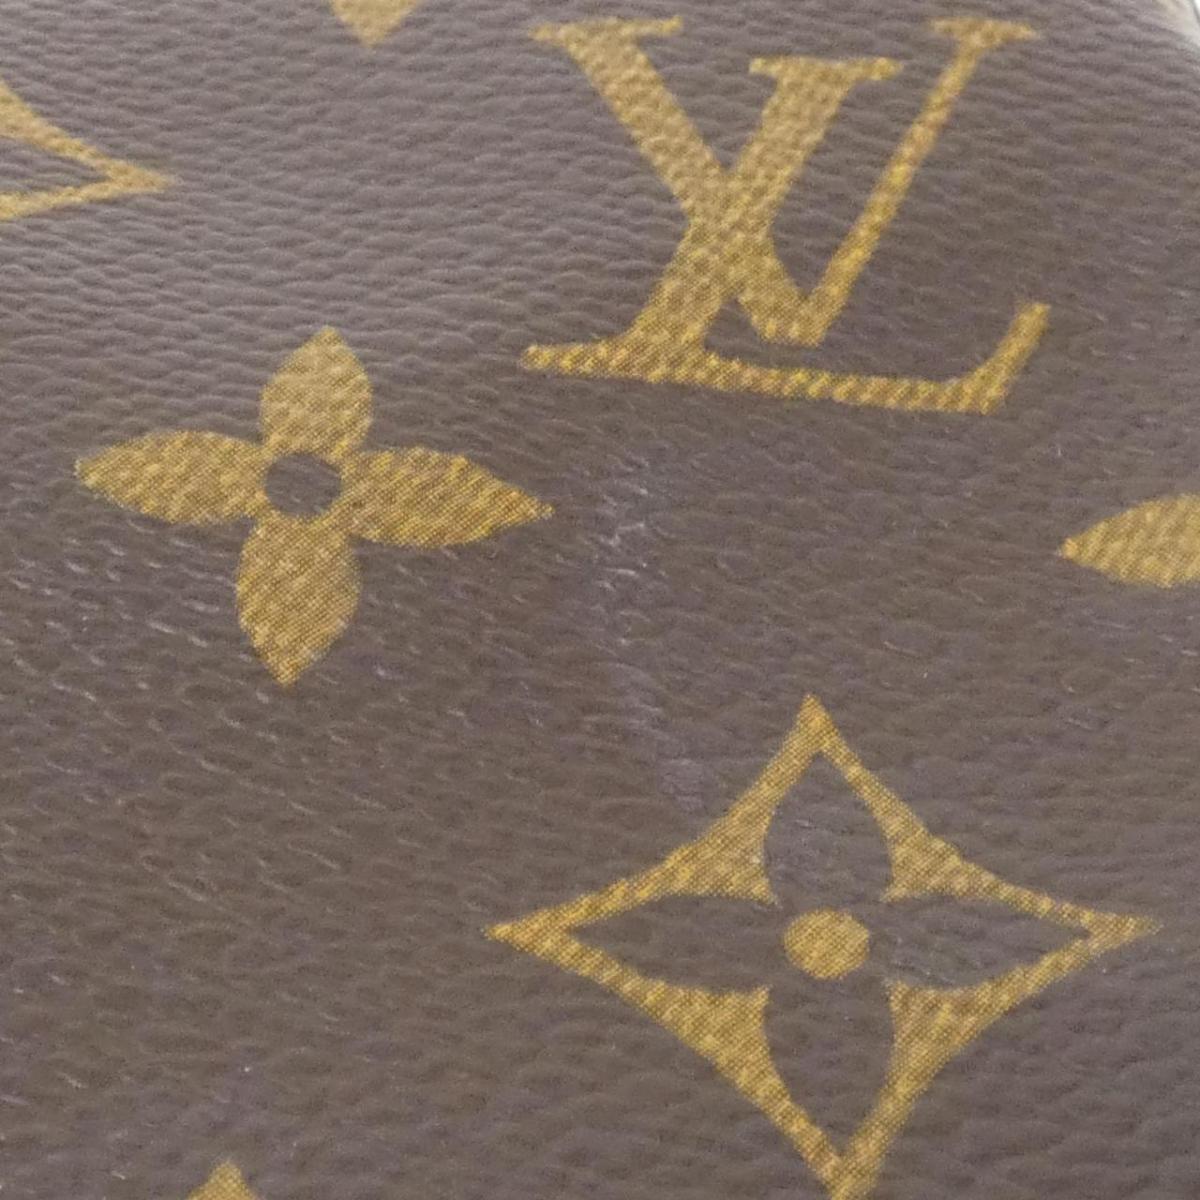 Louis Vuitton Monogram Viva City MM M51164 Shoulder Bag